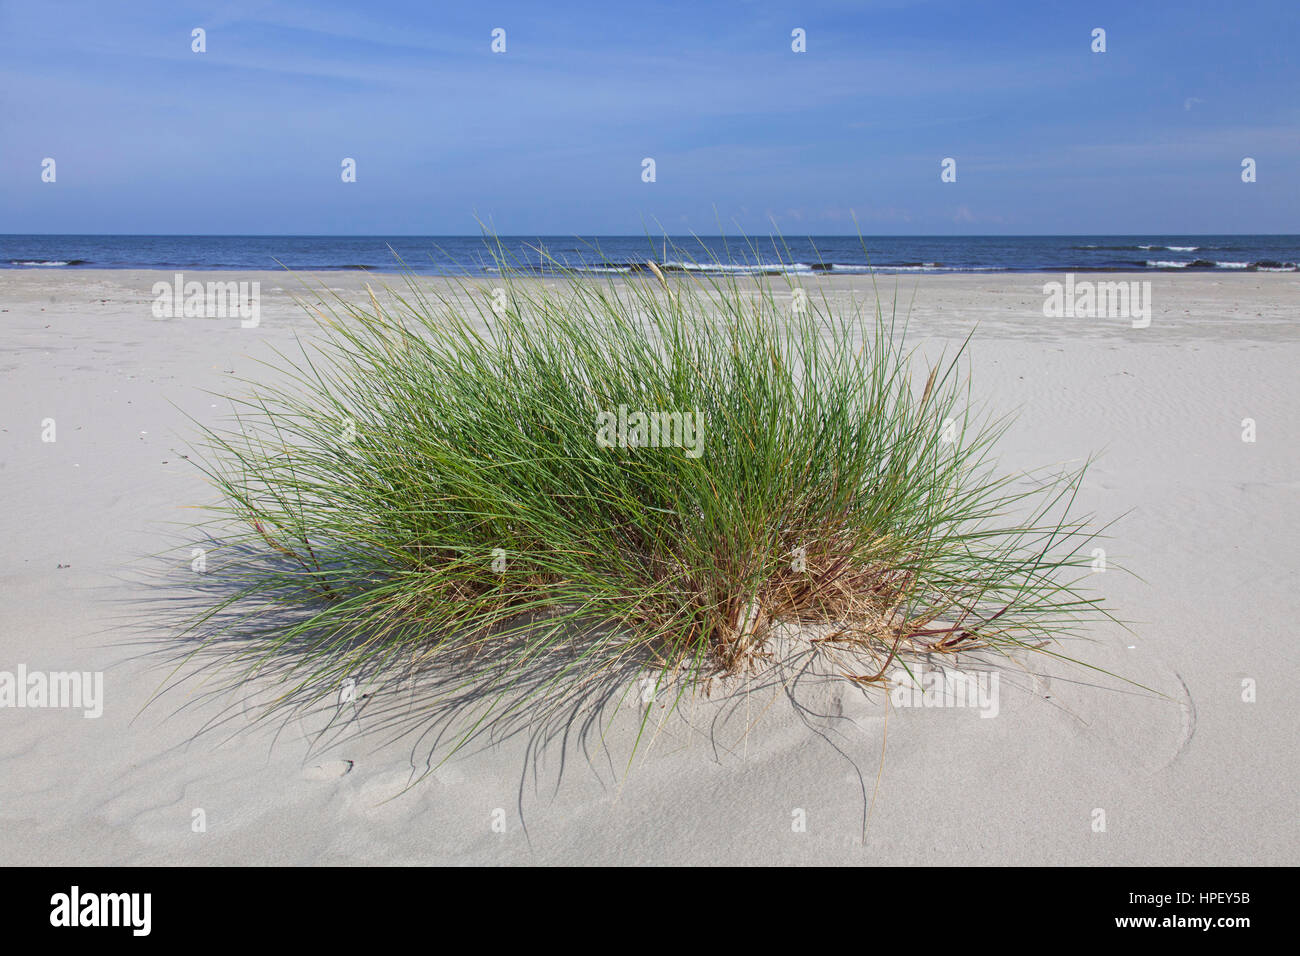 European marram grass / European beachgrass (Ammophila arenaria) in the dunes in summer Stock Photo